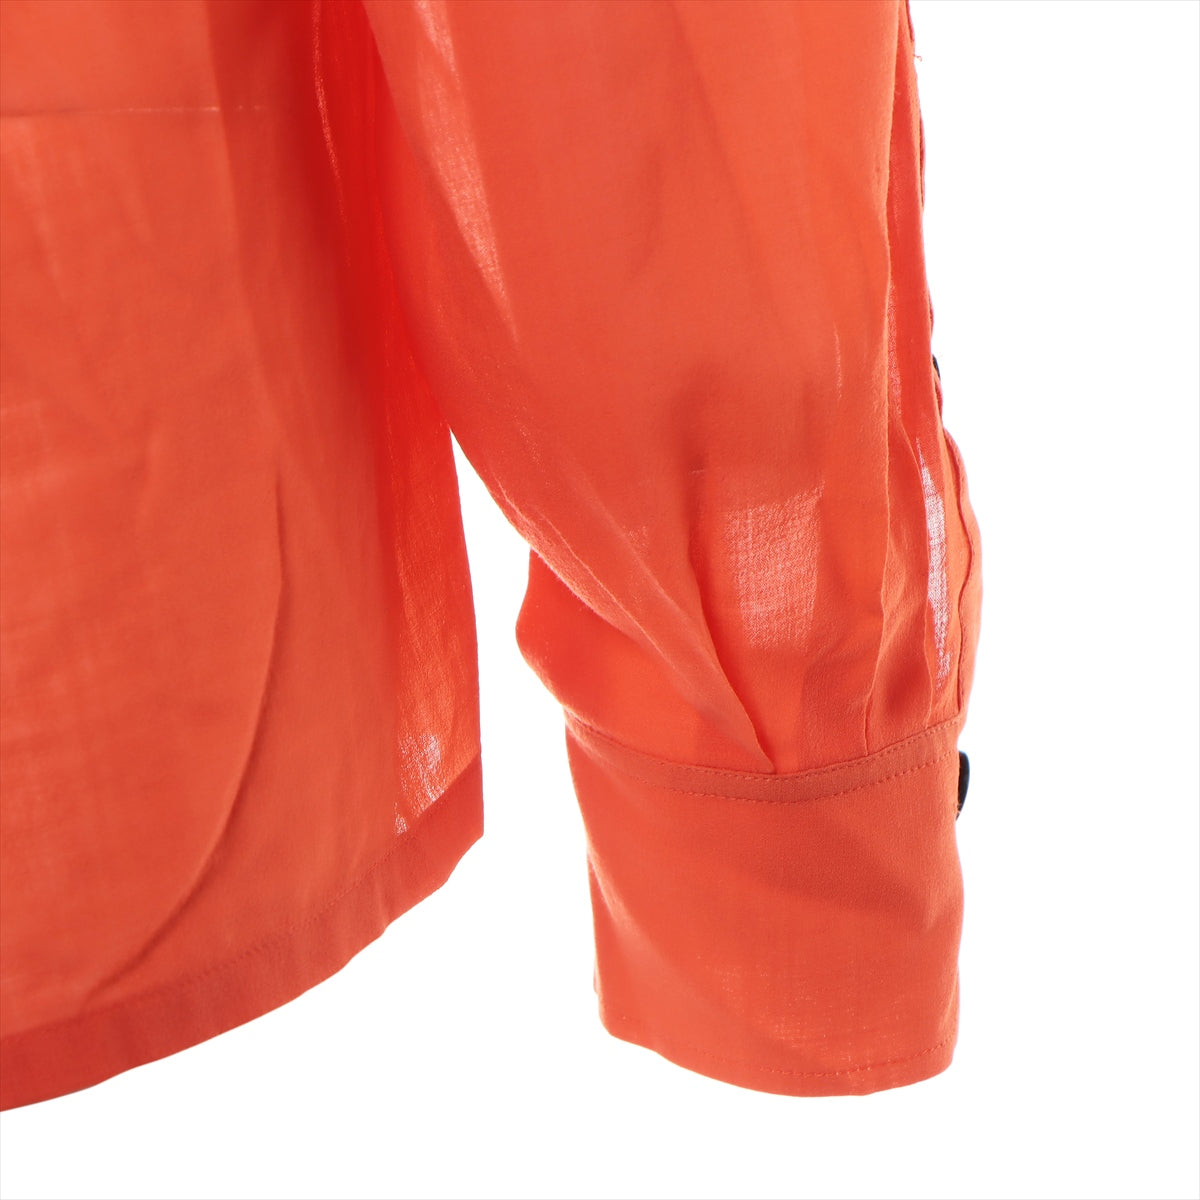 Hermès Wool Blouse 34 Ladies' Orange  Off-the-shoulder pocket design